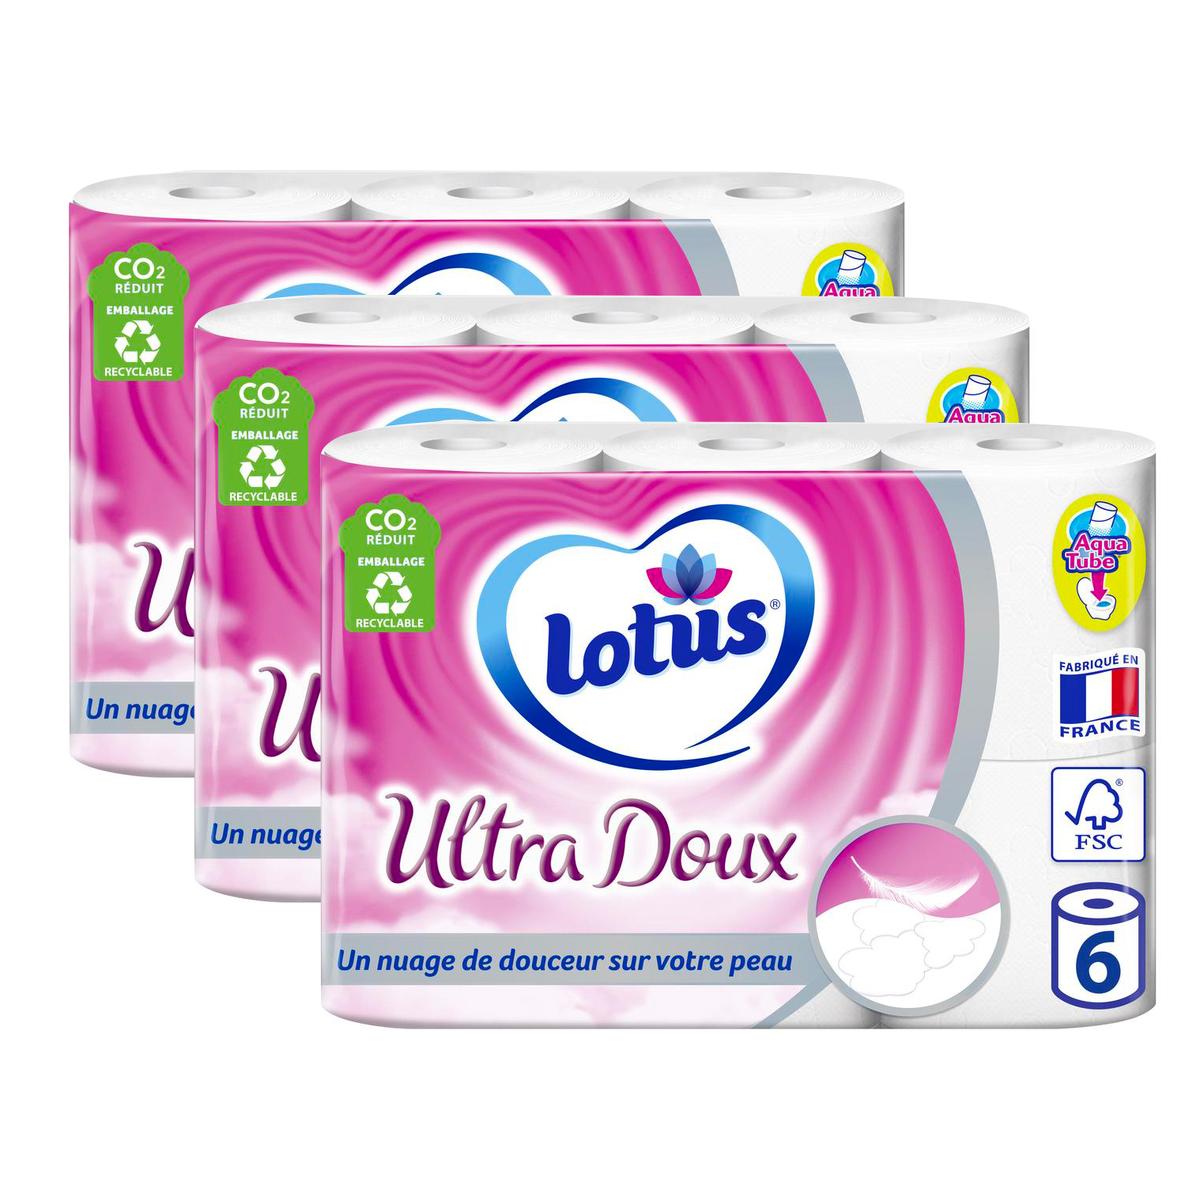 Lotus Confort Papier Toilette 2 Épaisseurs Rose, 24 rouleaux